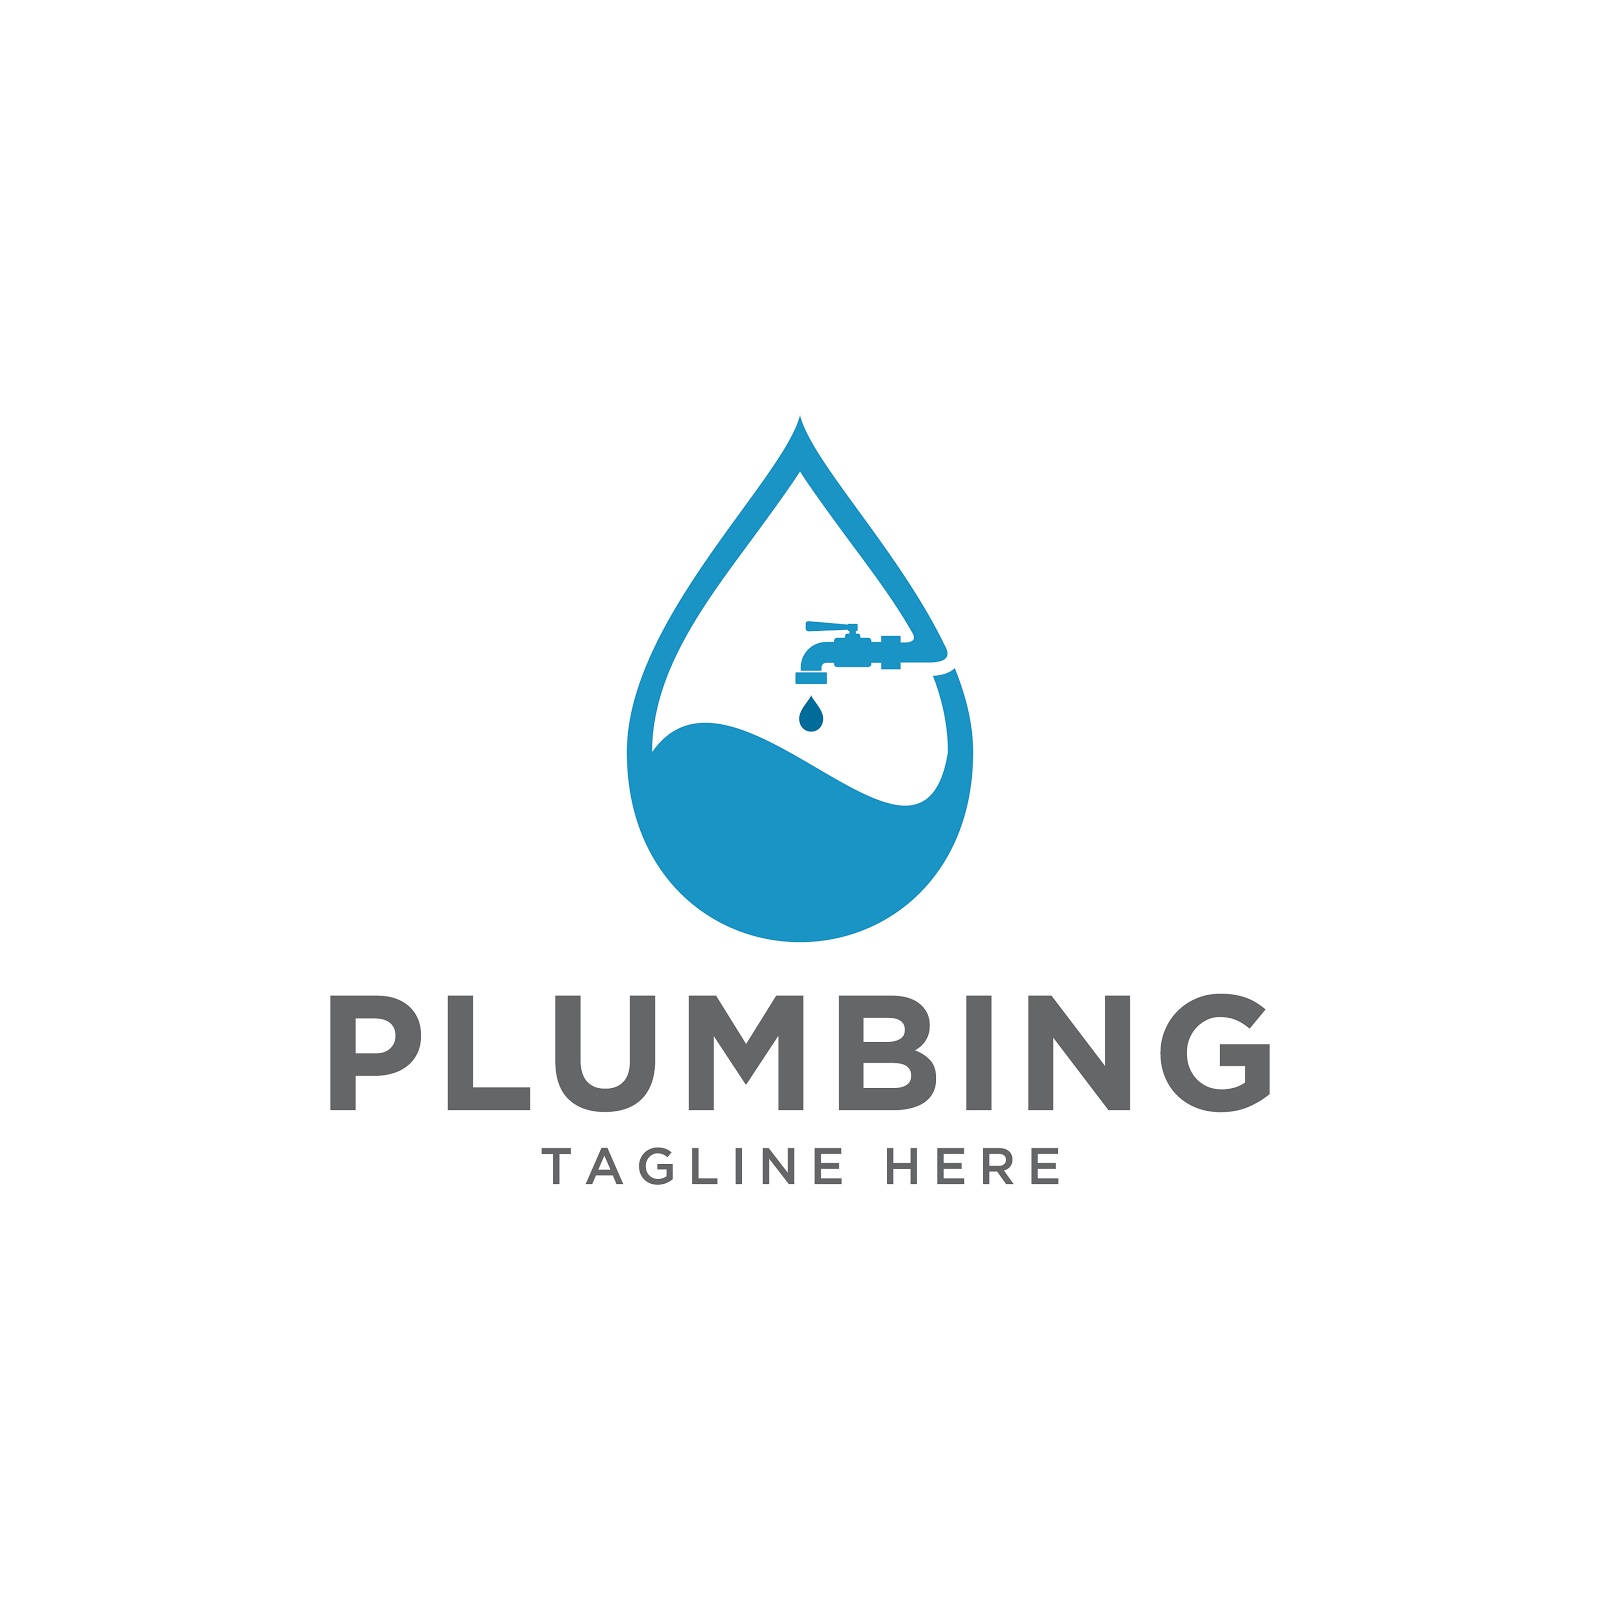 Best Plumbing Logo Design / 13 Plumbing Logos Ideas Plumbing Logo ...